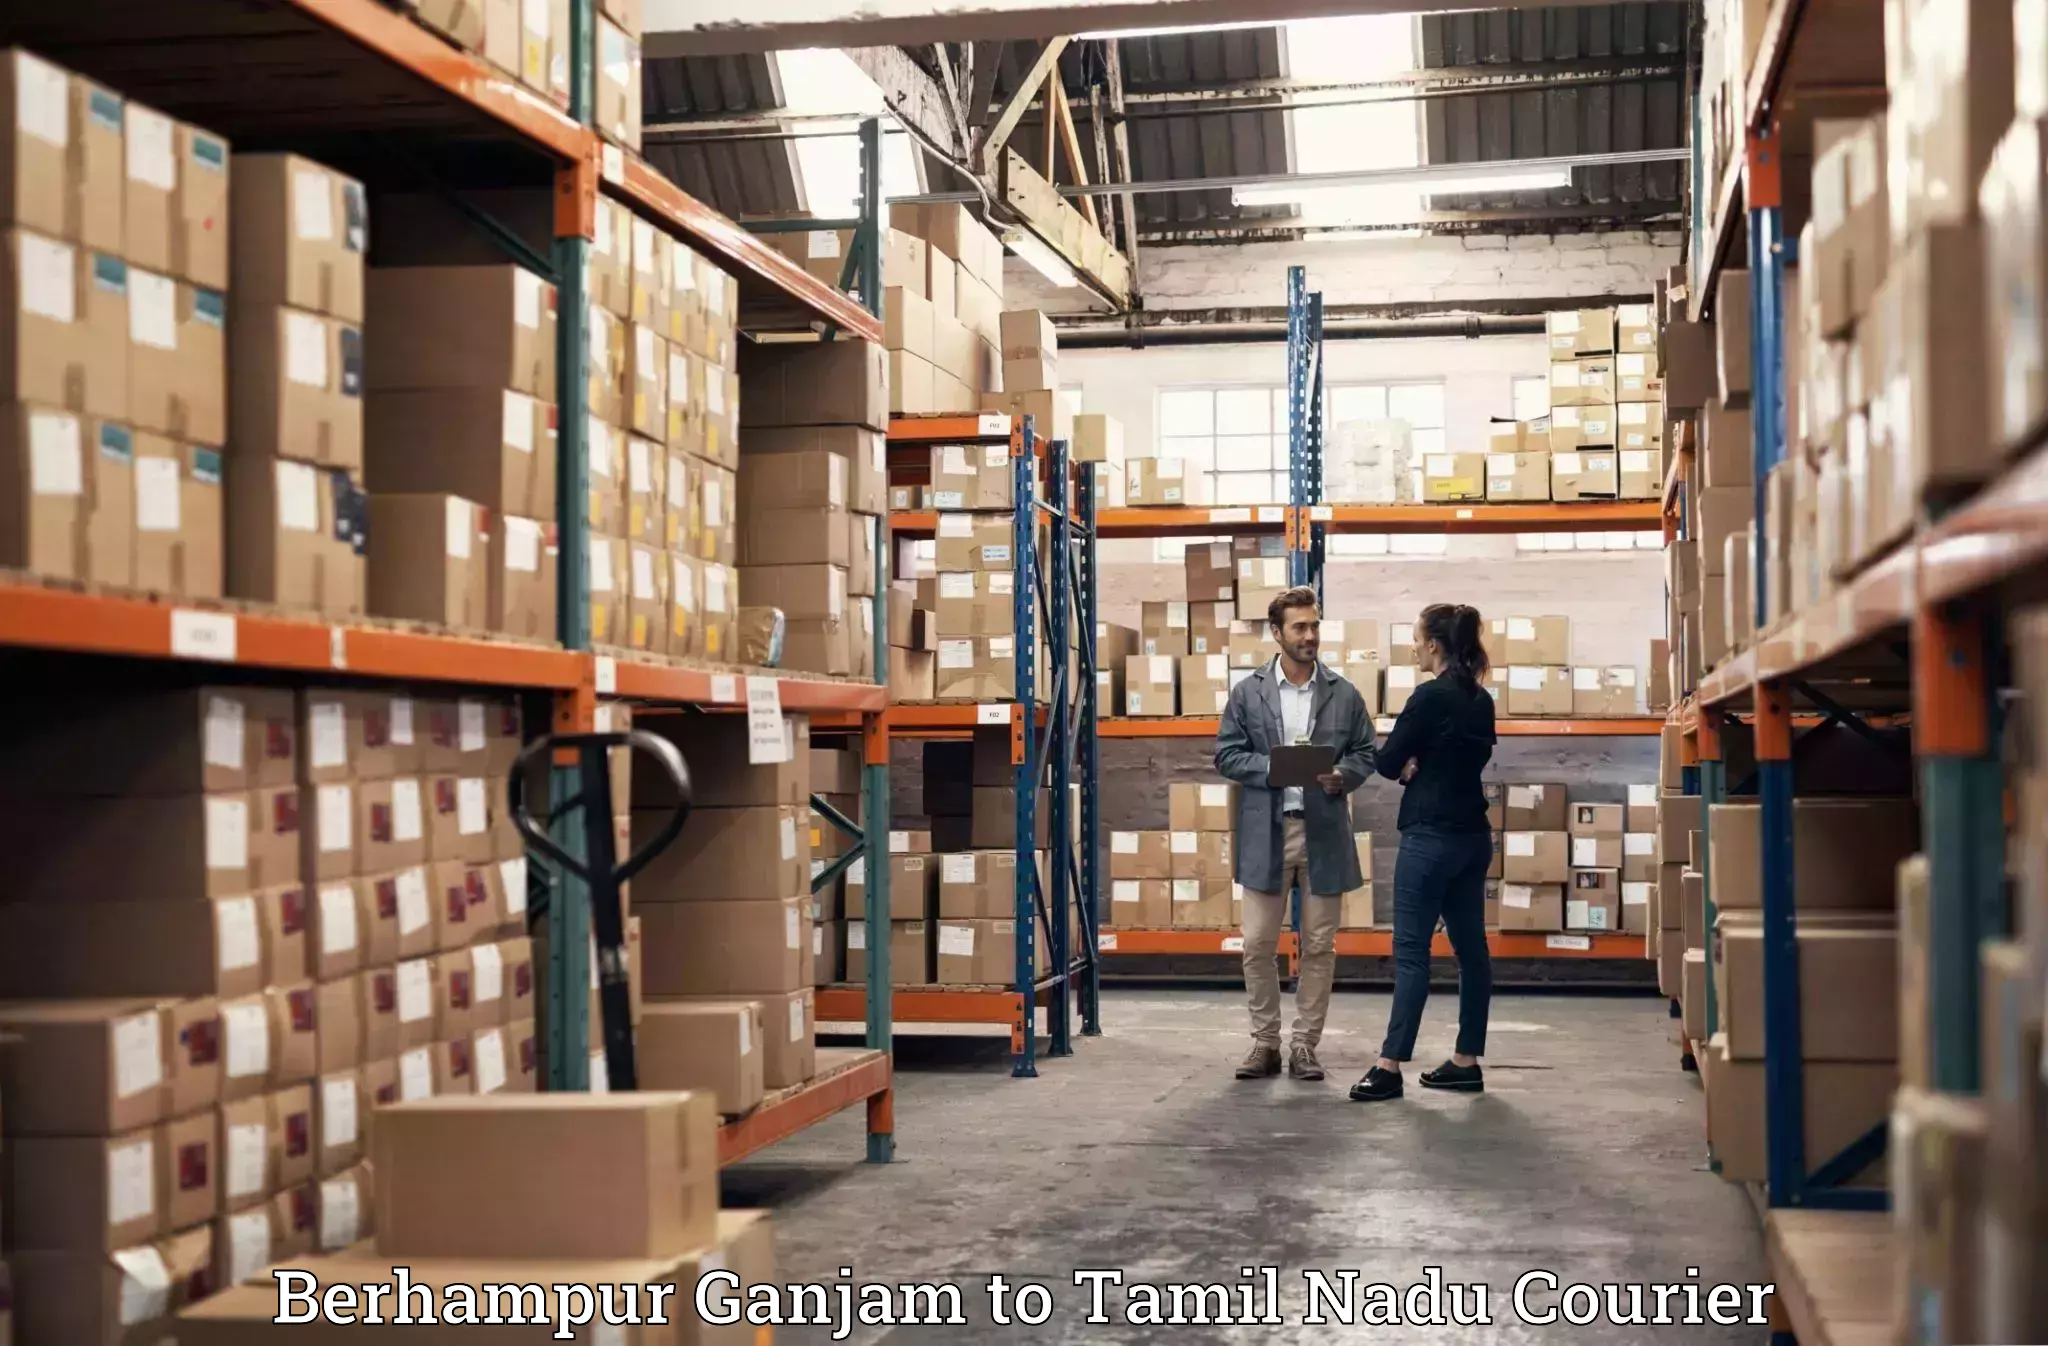 Moving and packing experts Berhampur Ganjam to Kanchipuram